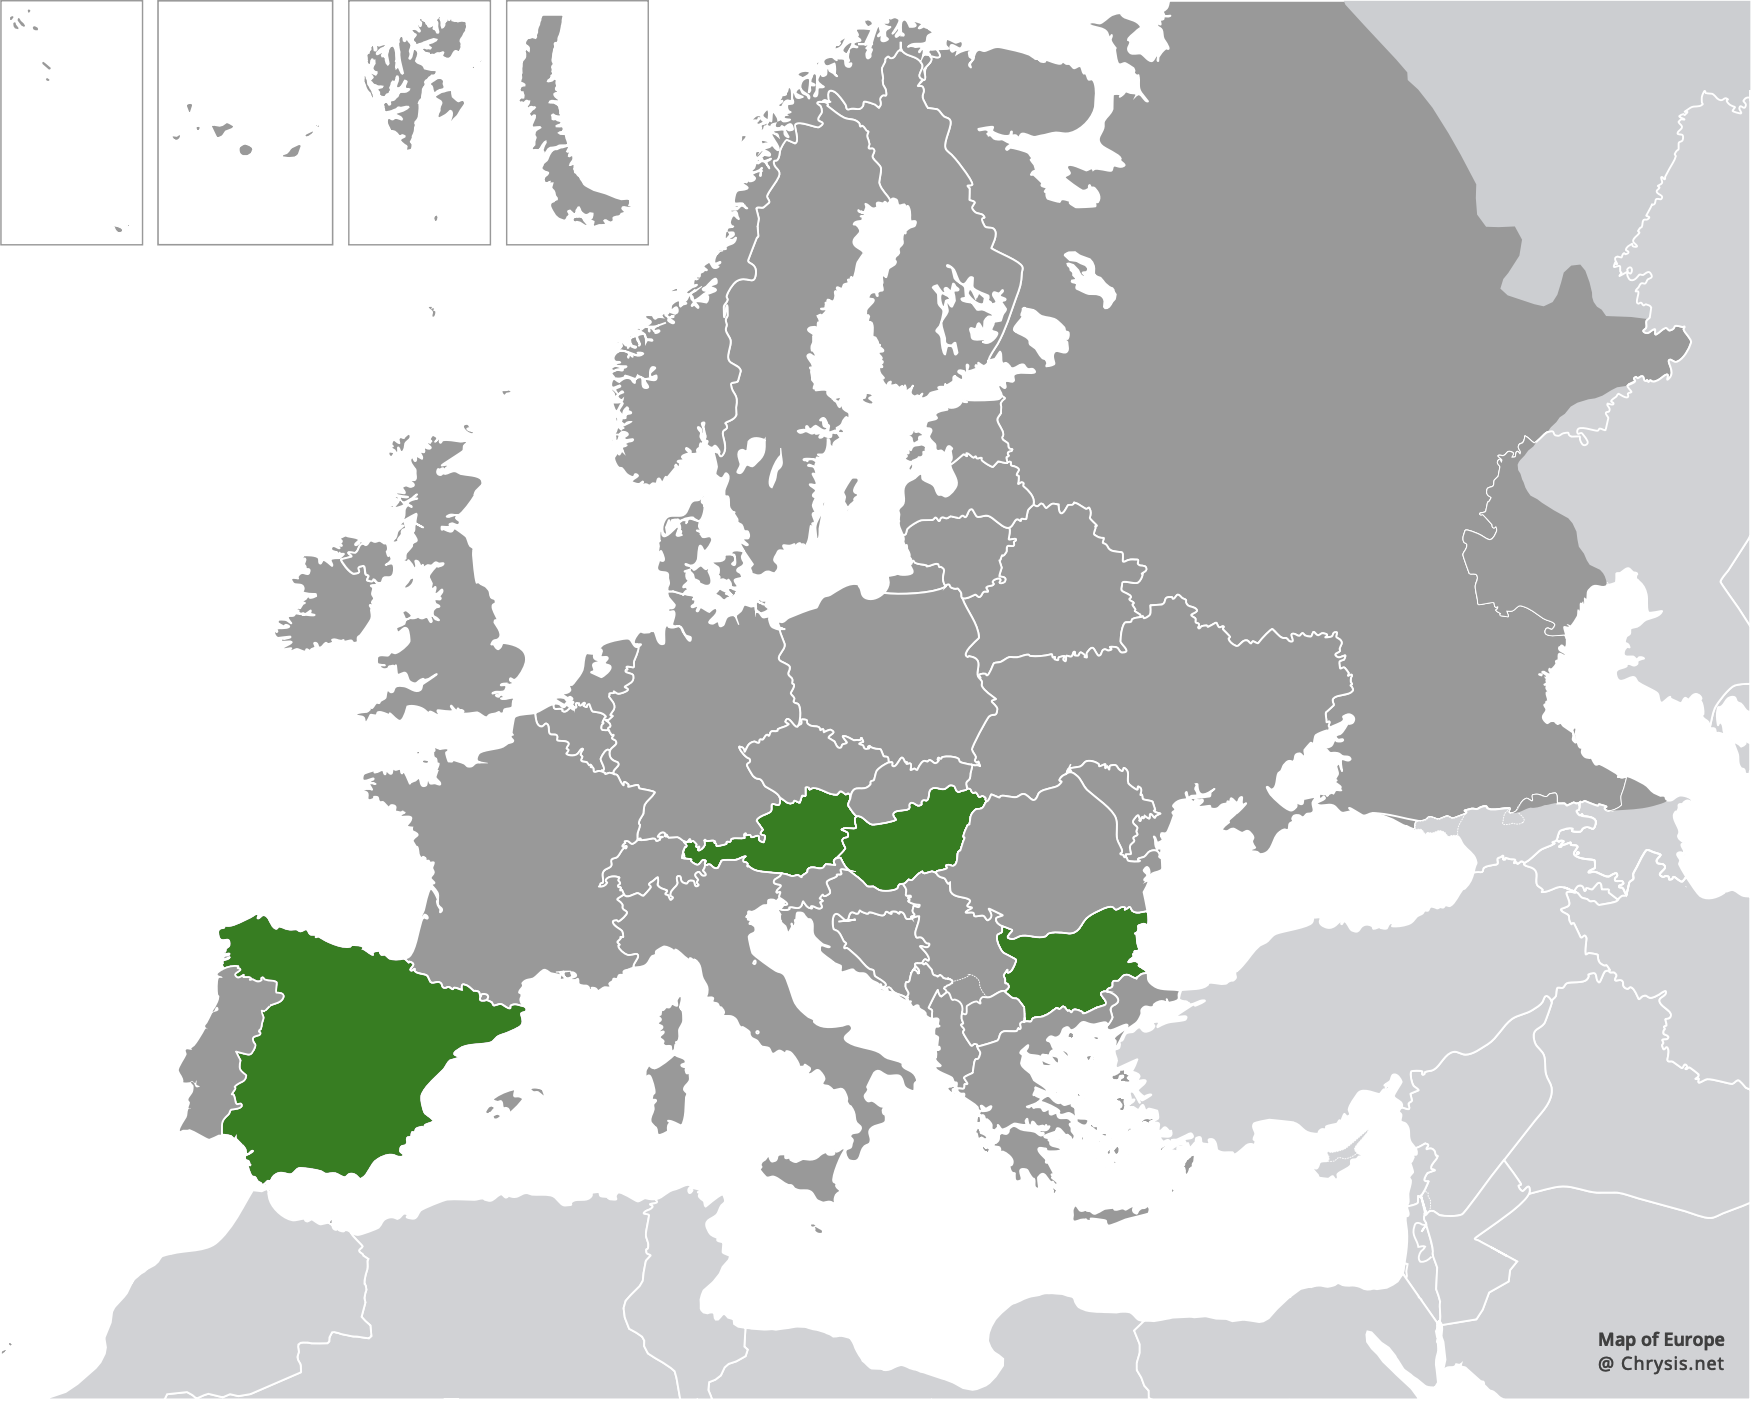 European distribution of Hedychridium adventicium